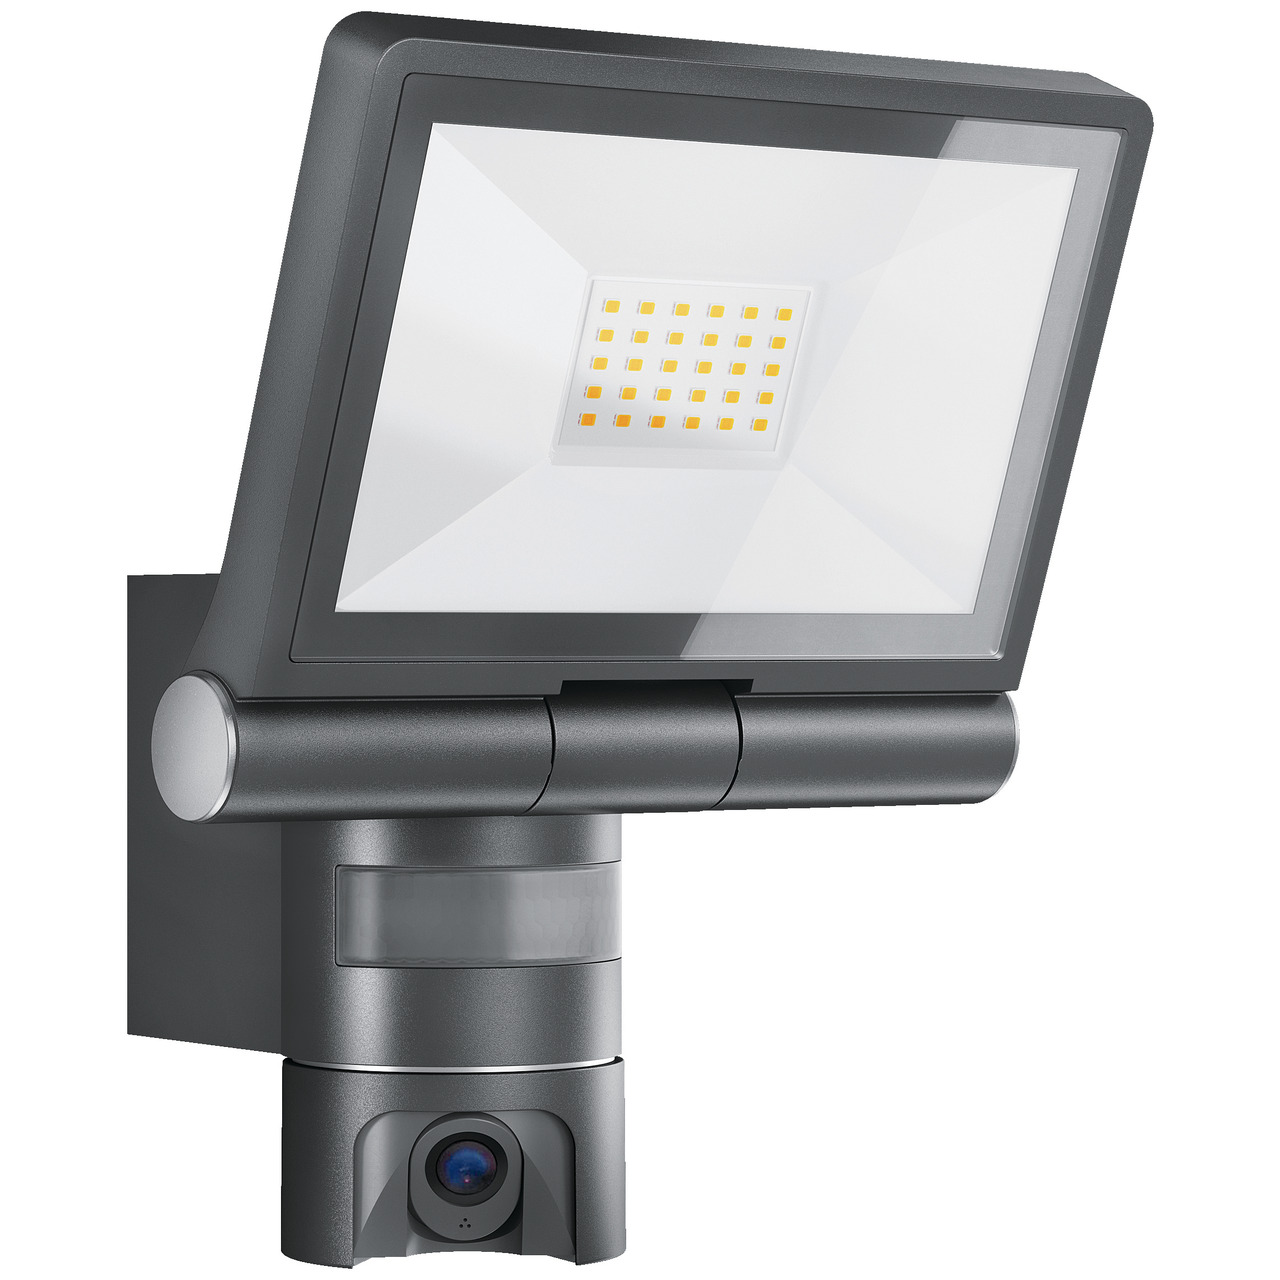 Steinel IP-Überwachungskamera mit LED-Scheinwerfer XLED CAM1 S ANT- HD (720p)- App